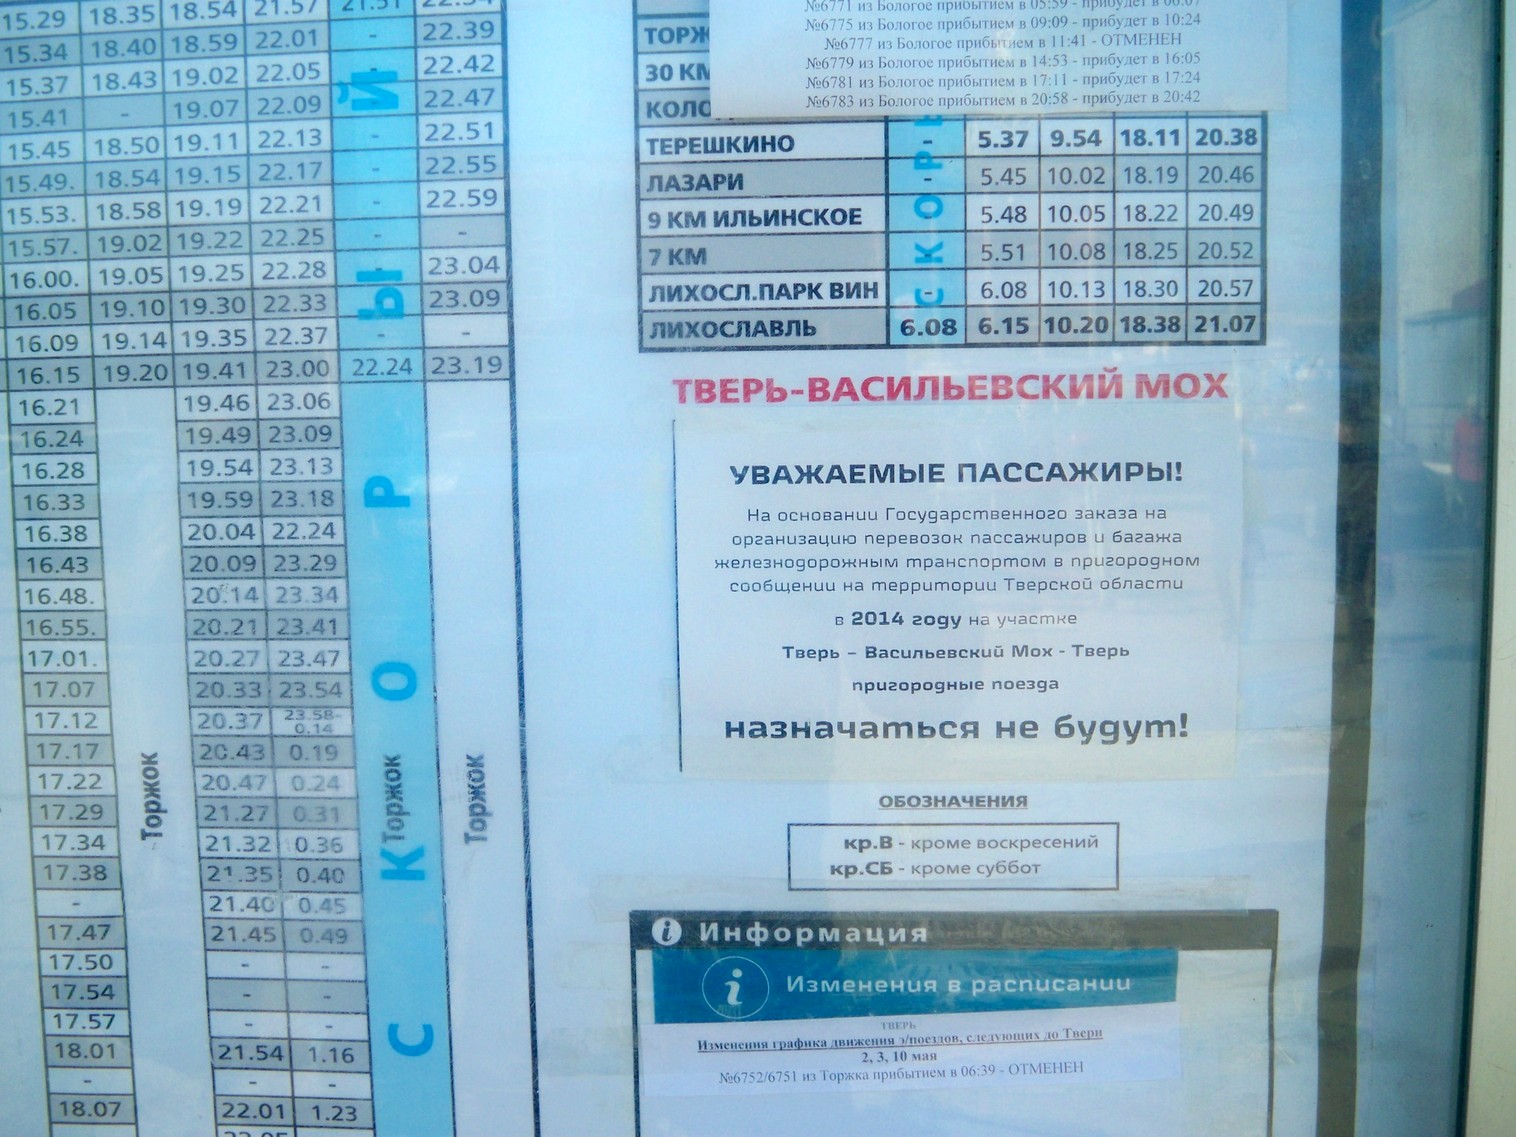 Железнодорожная линия Дорошиха — Васильевский Мох — фотографии, сделанные в 2014 году (часть 1)